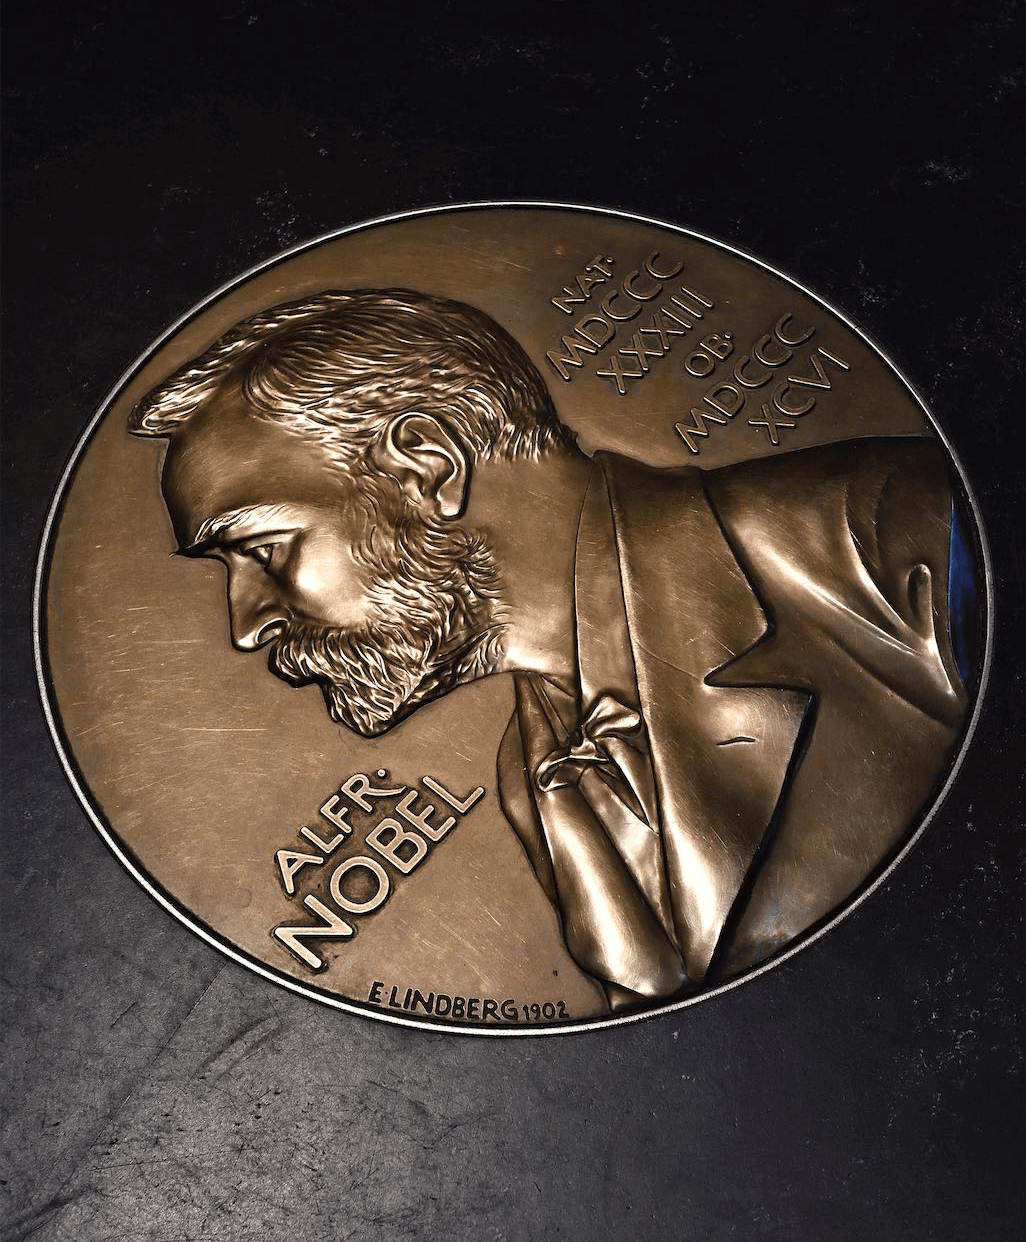 the Nobel Prize emblem